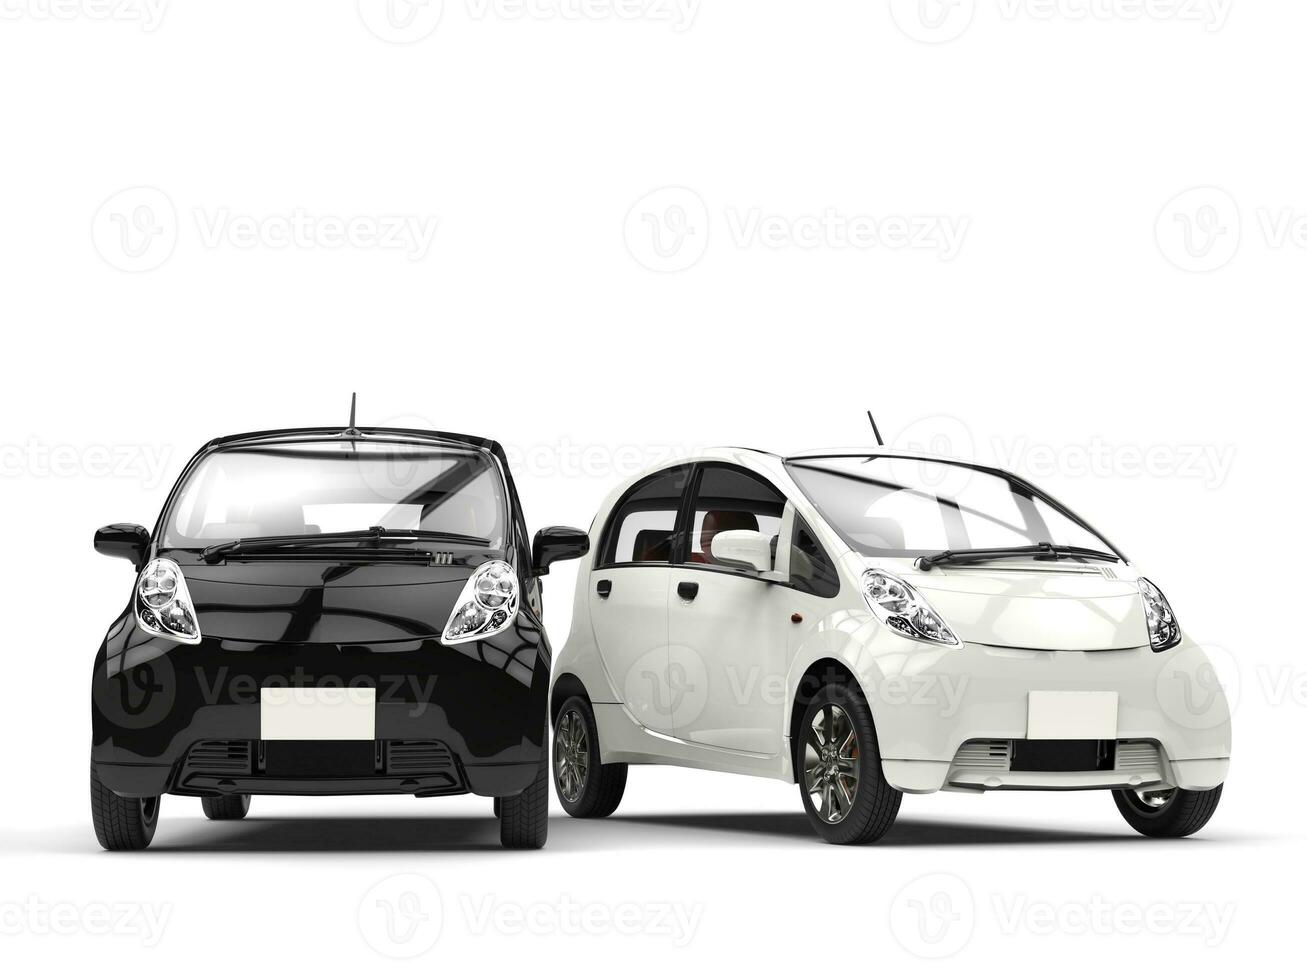 negro y blanco pequeño ecomónico eléctrico carros lado por lado foto